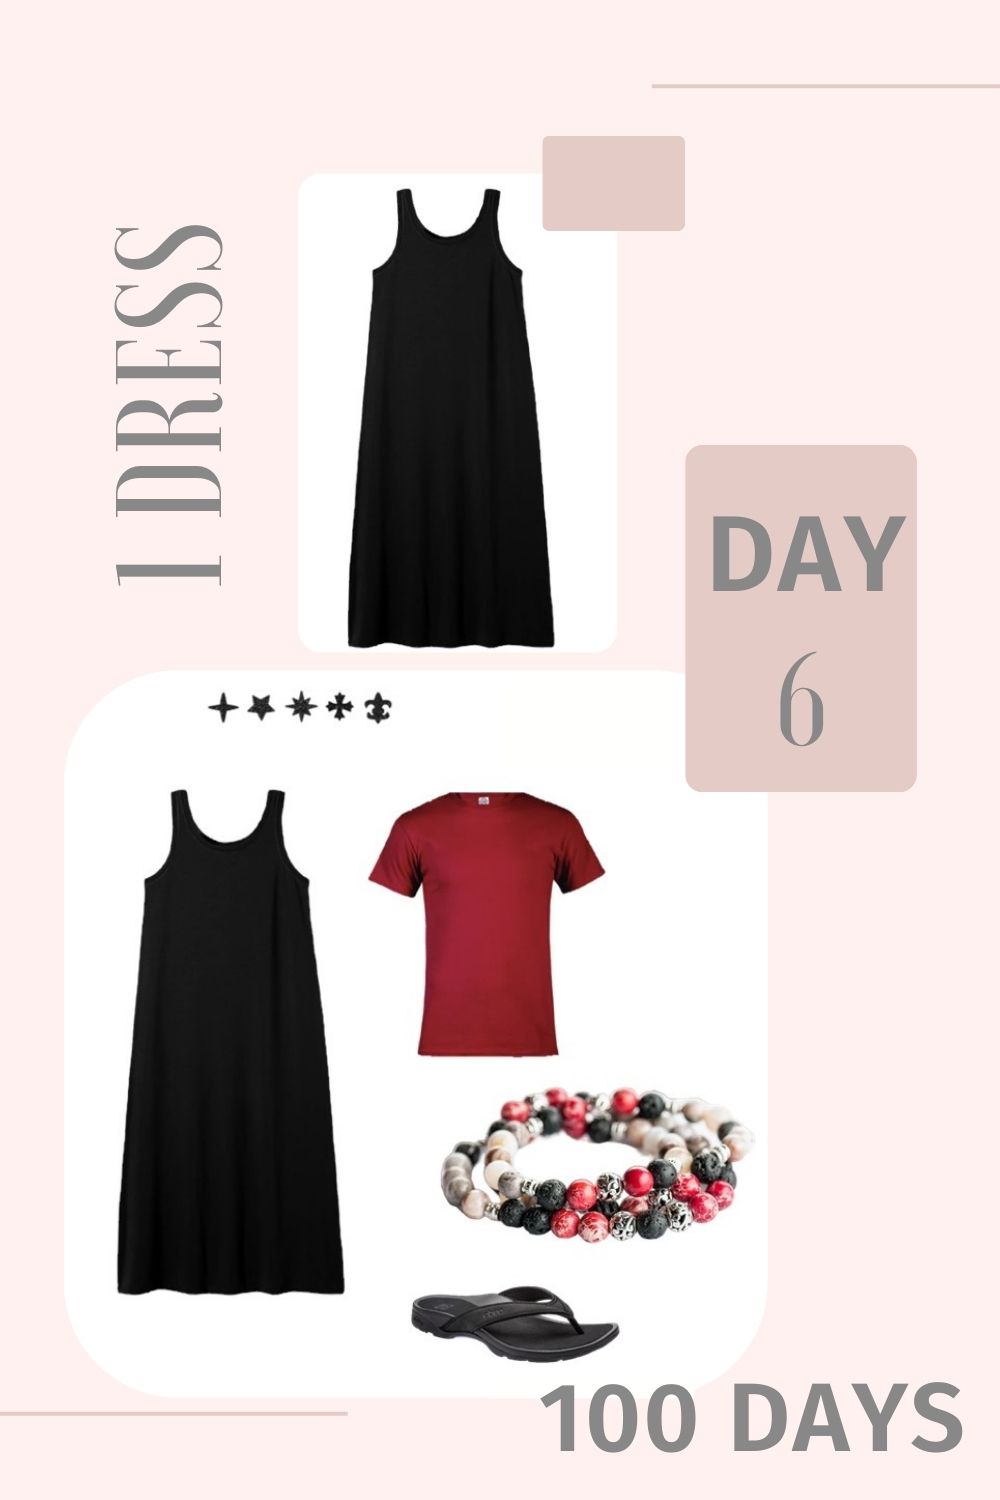 1 Dress 100 Days - Day 6